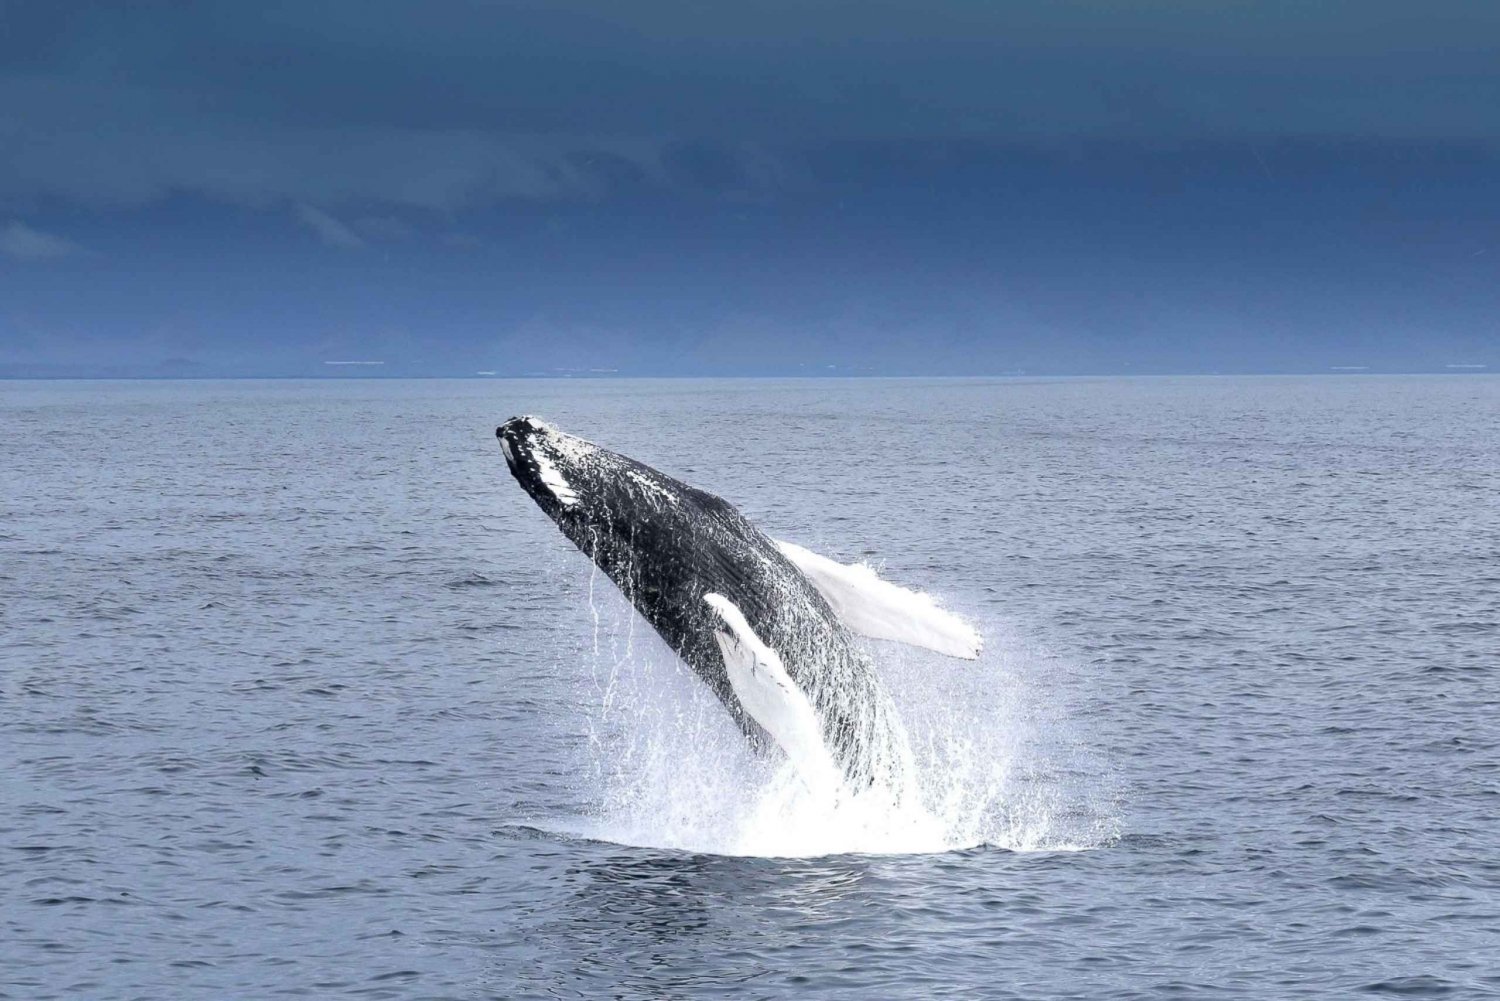 Reykjavik: Whale Watching Tour